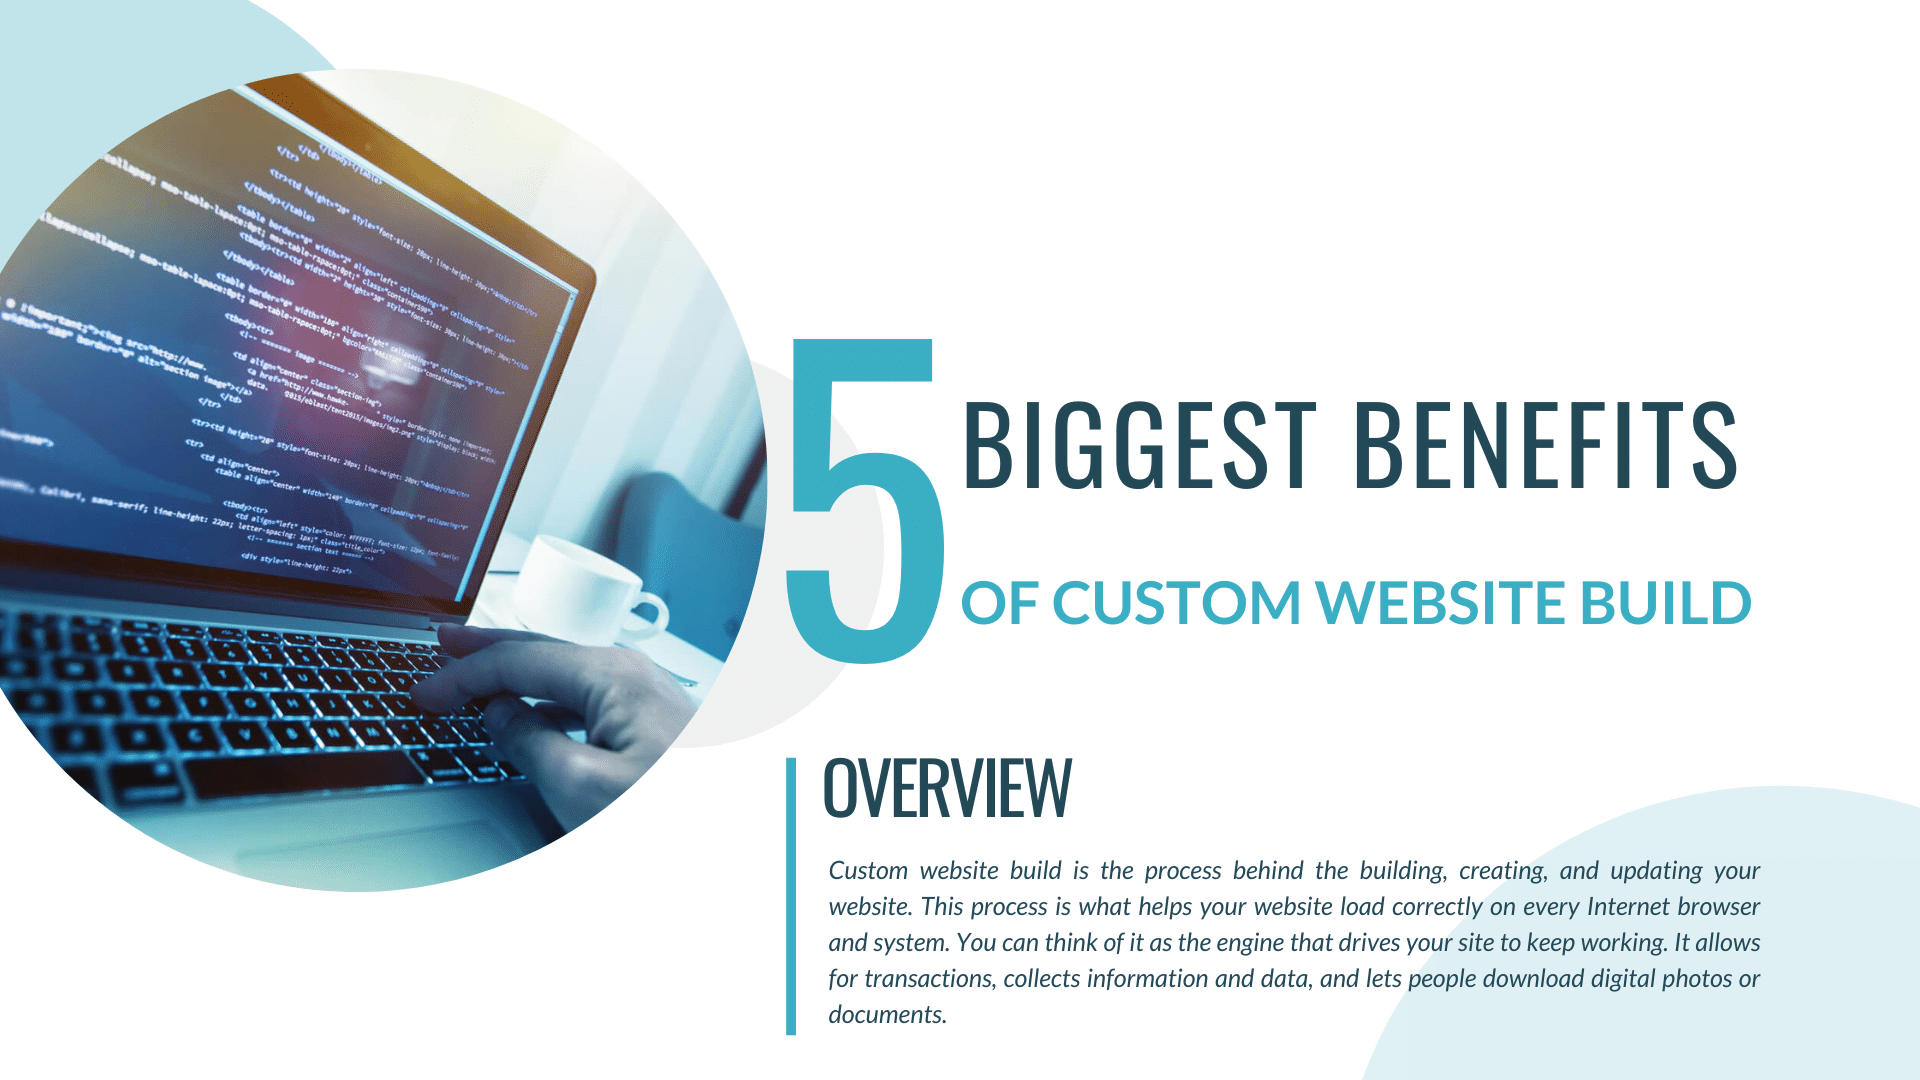 5 Biggest Benefits of Custom Website Build